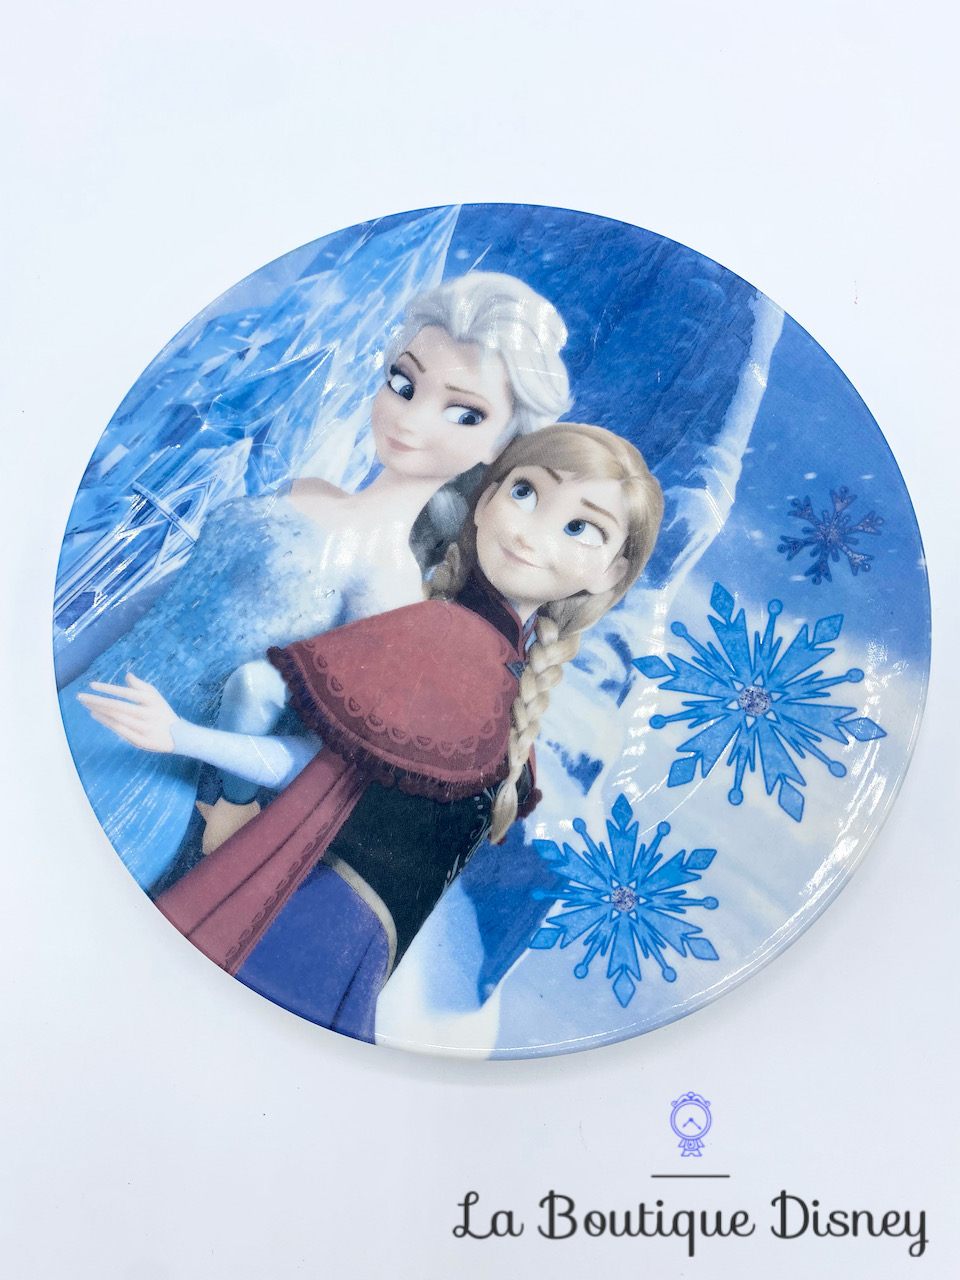 Assiette creuse La reine des Neiges Disney Frozen bol - Cdiscount